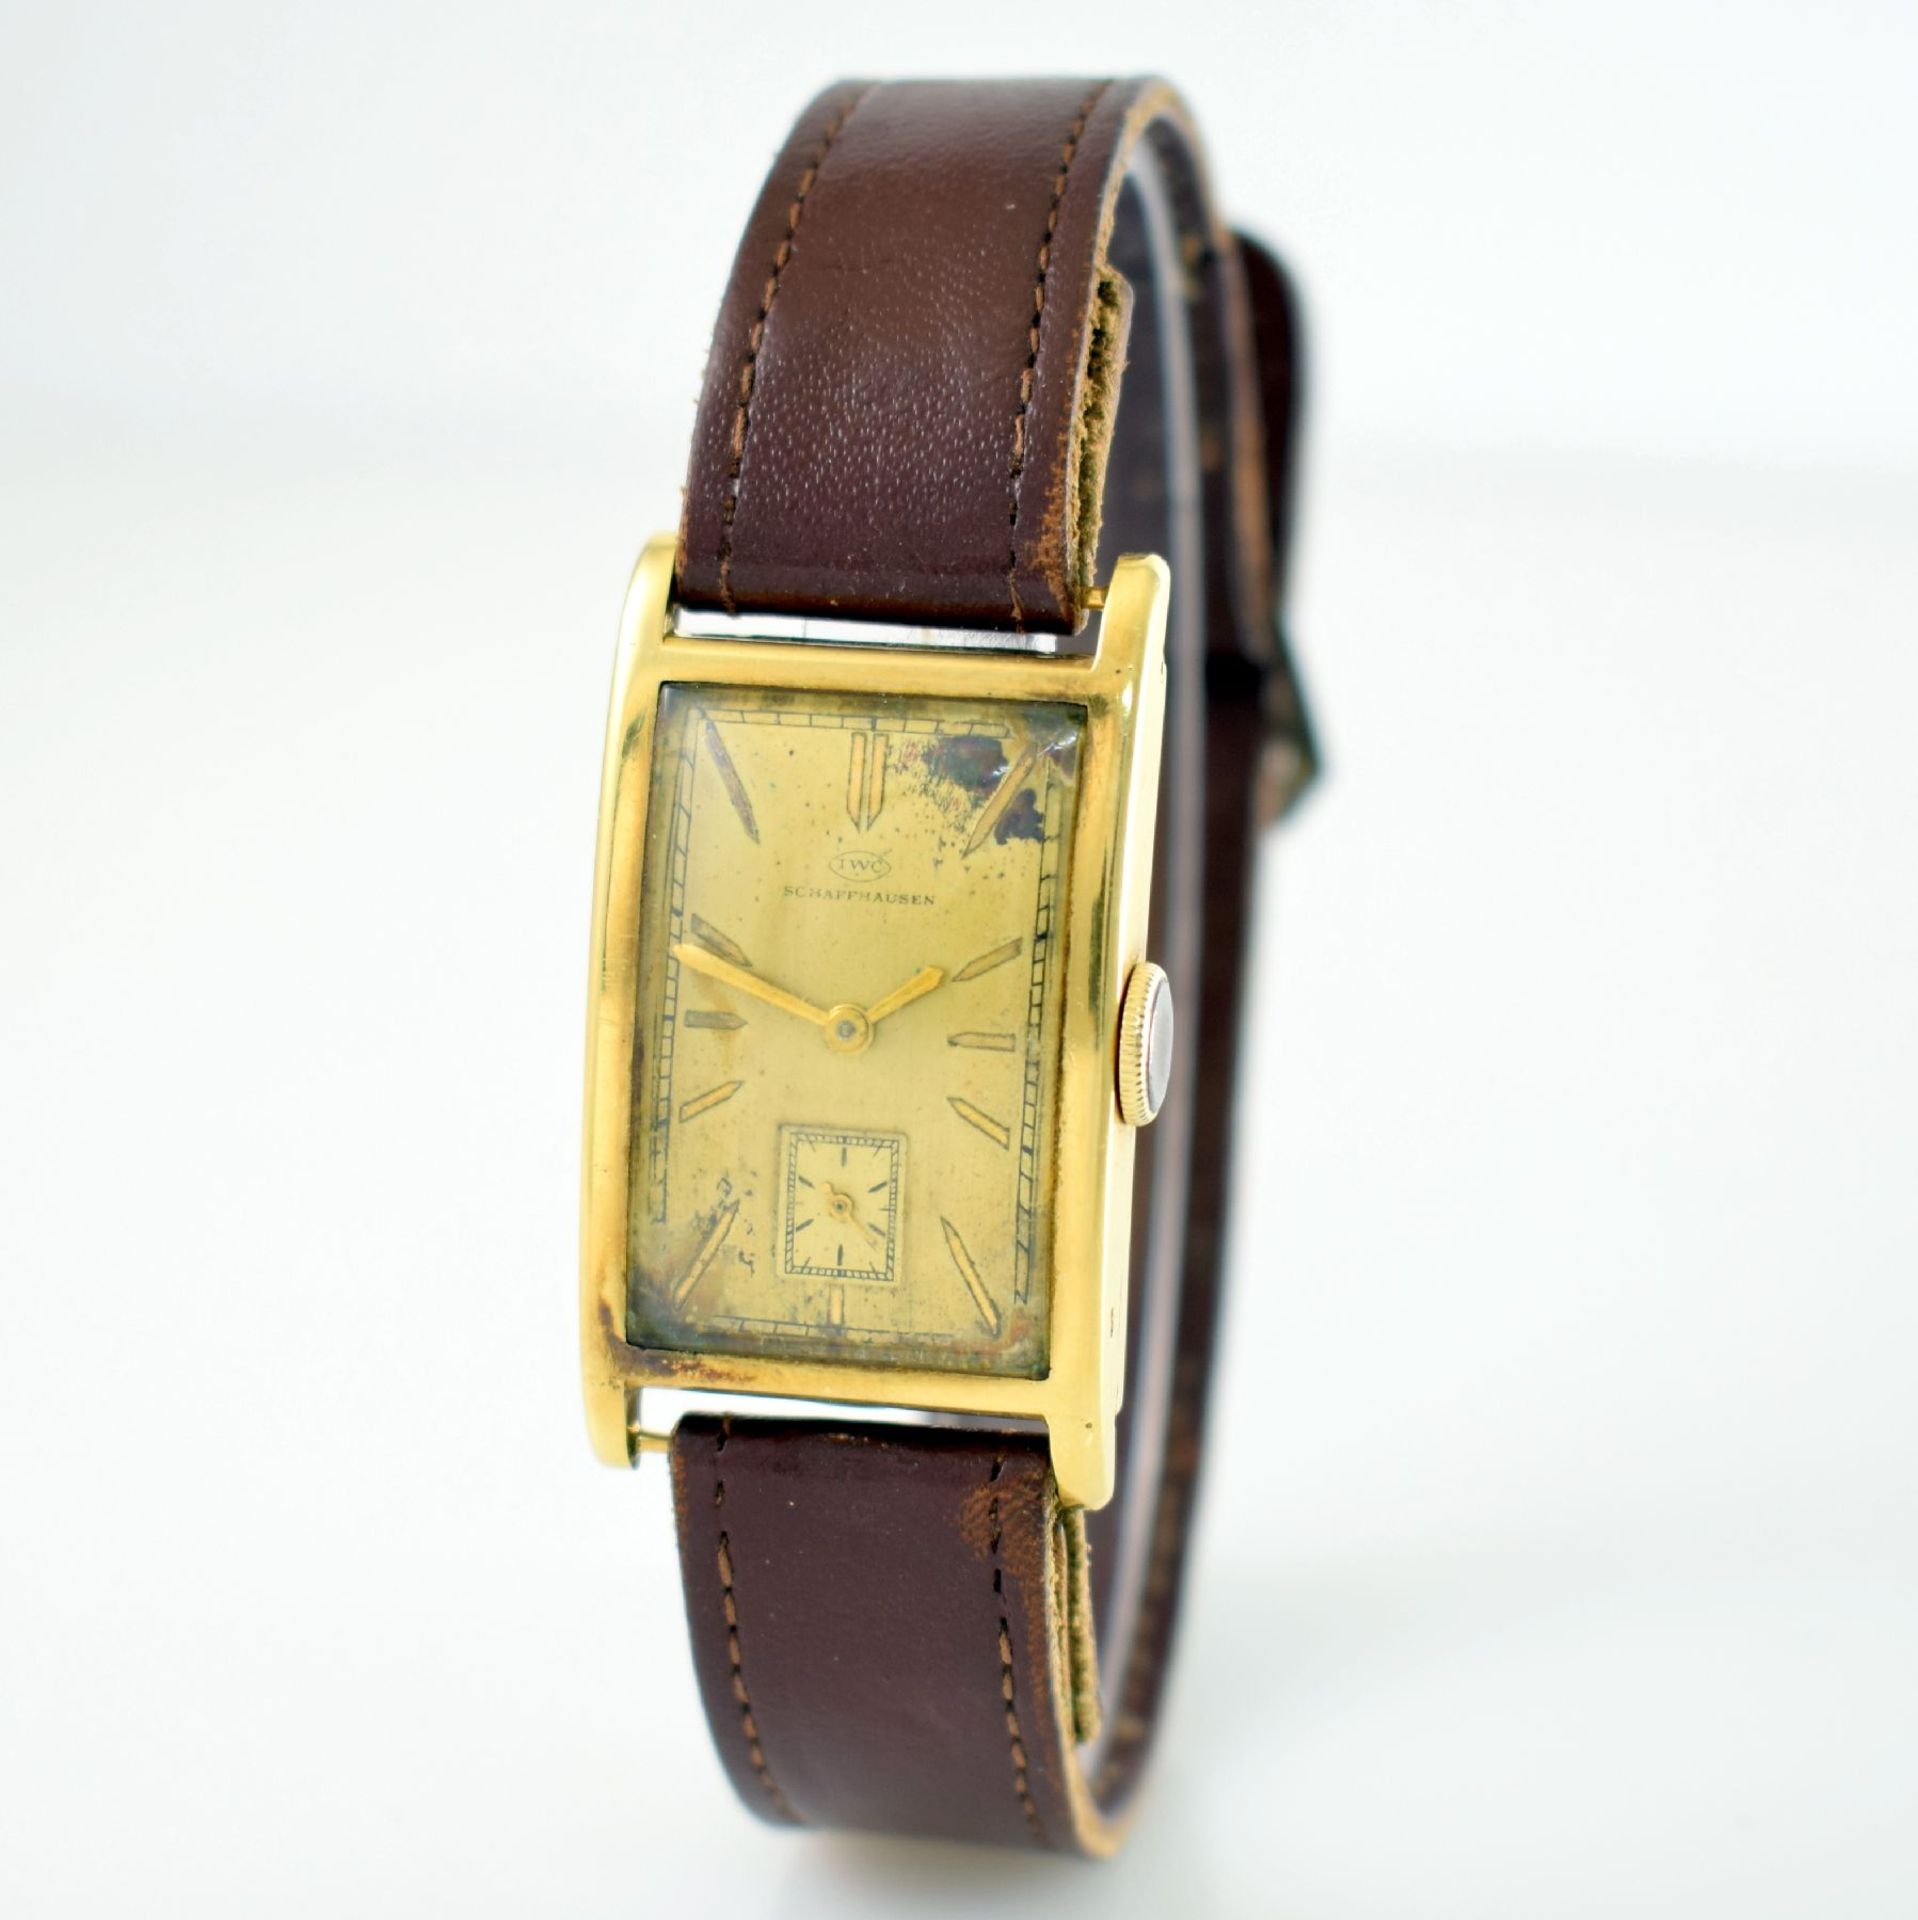 IWC seltene Herrenarmbanduhr in GG 585/000, Handaufzug, Schweiz um 1932, Scharnierboden, Zifferbl. - Bild 3 aus 7